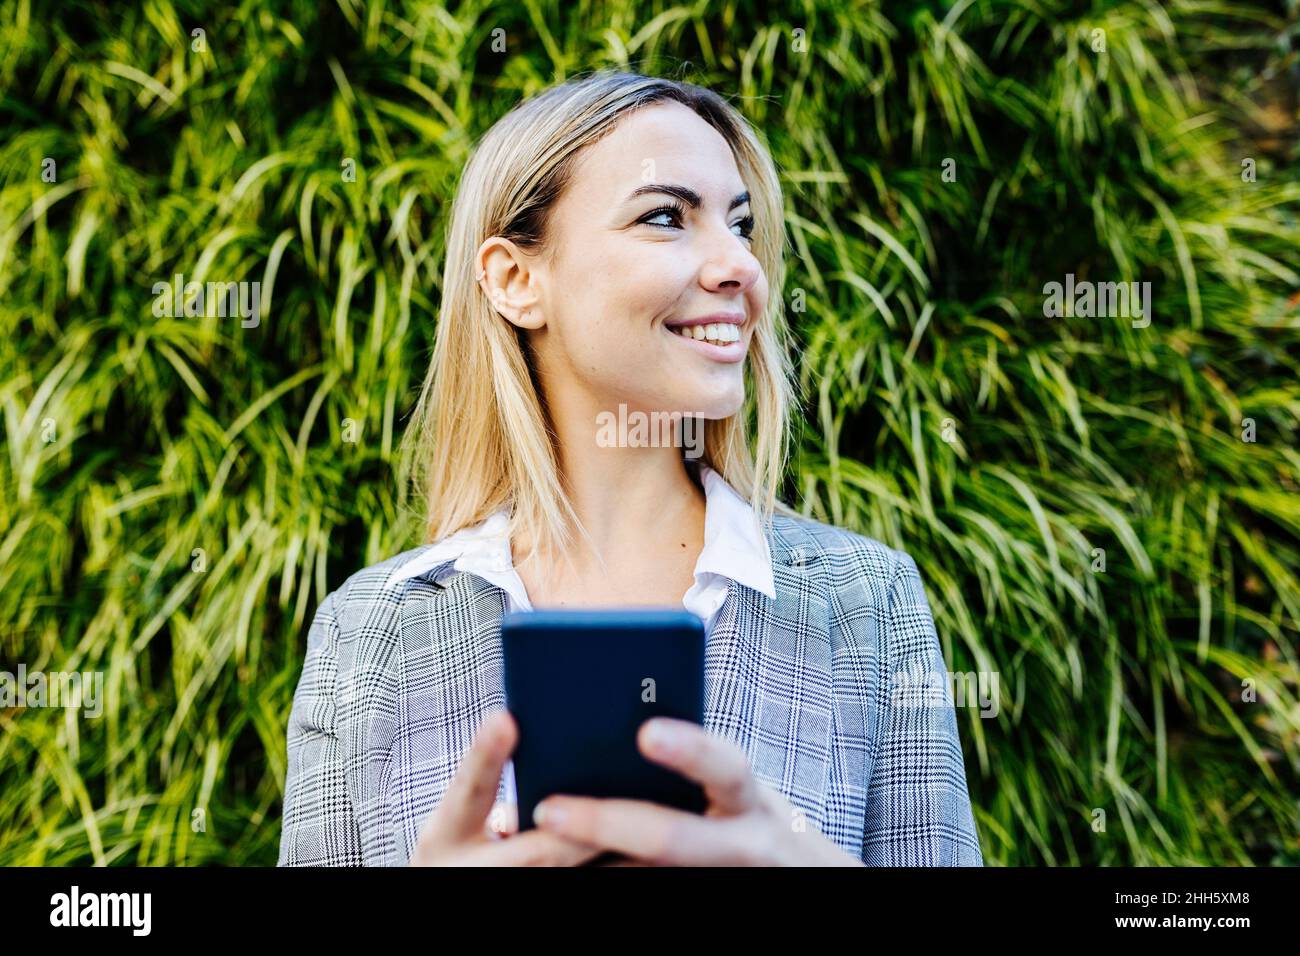 Junge blonde arbeitende Frau mit Smartphone vor grünen Pflanzen Stockfoto